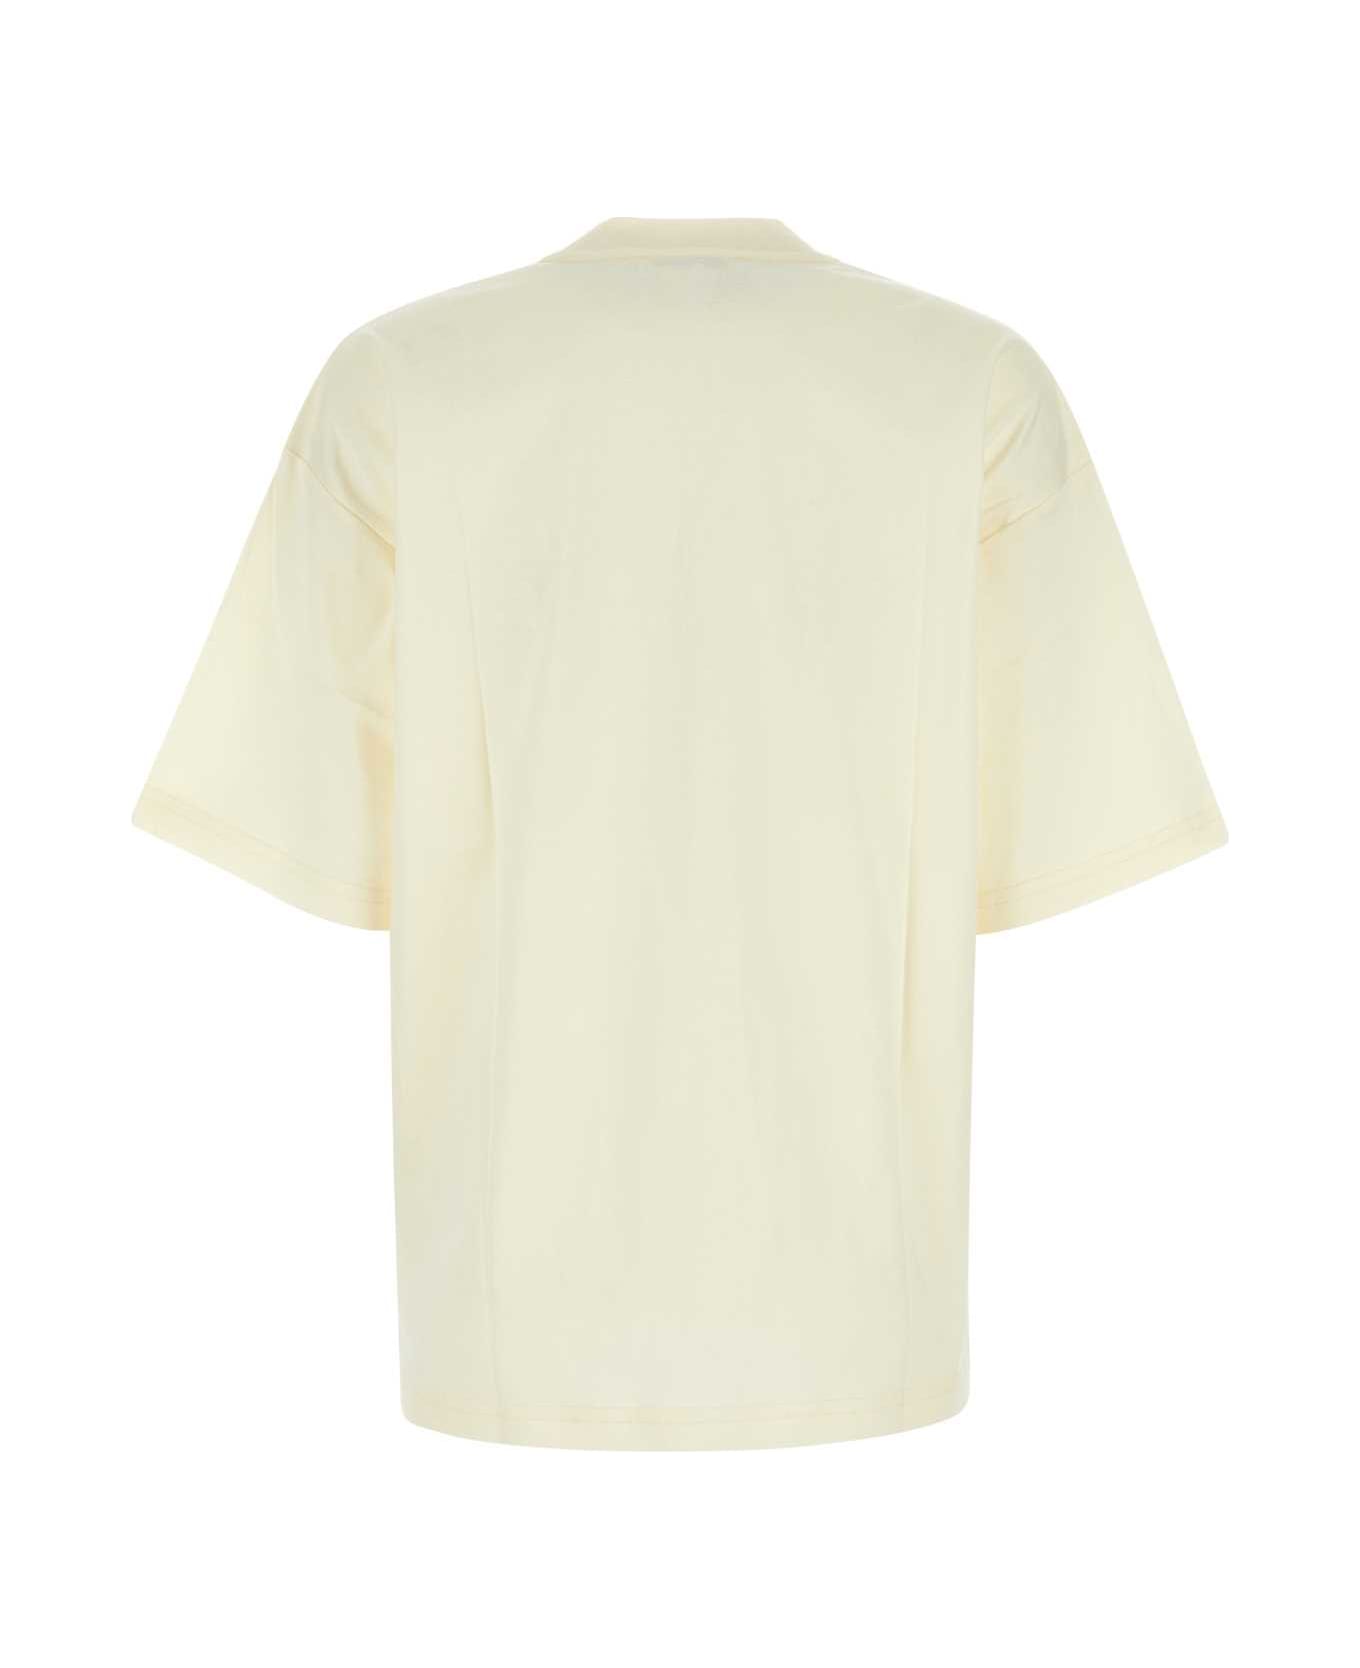 Lanvin Cream Cotton T-shirt - CREAM